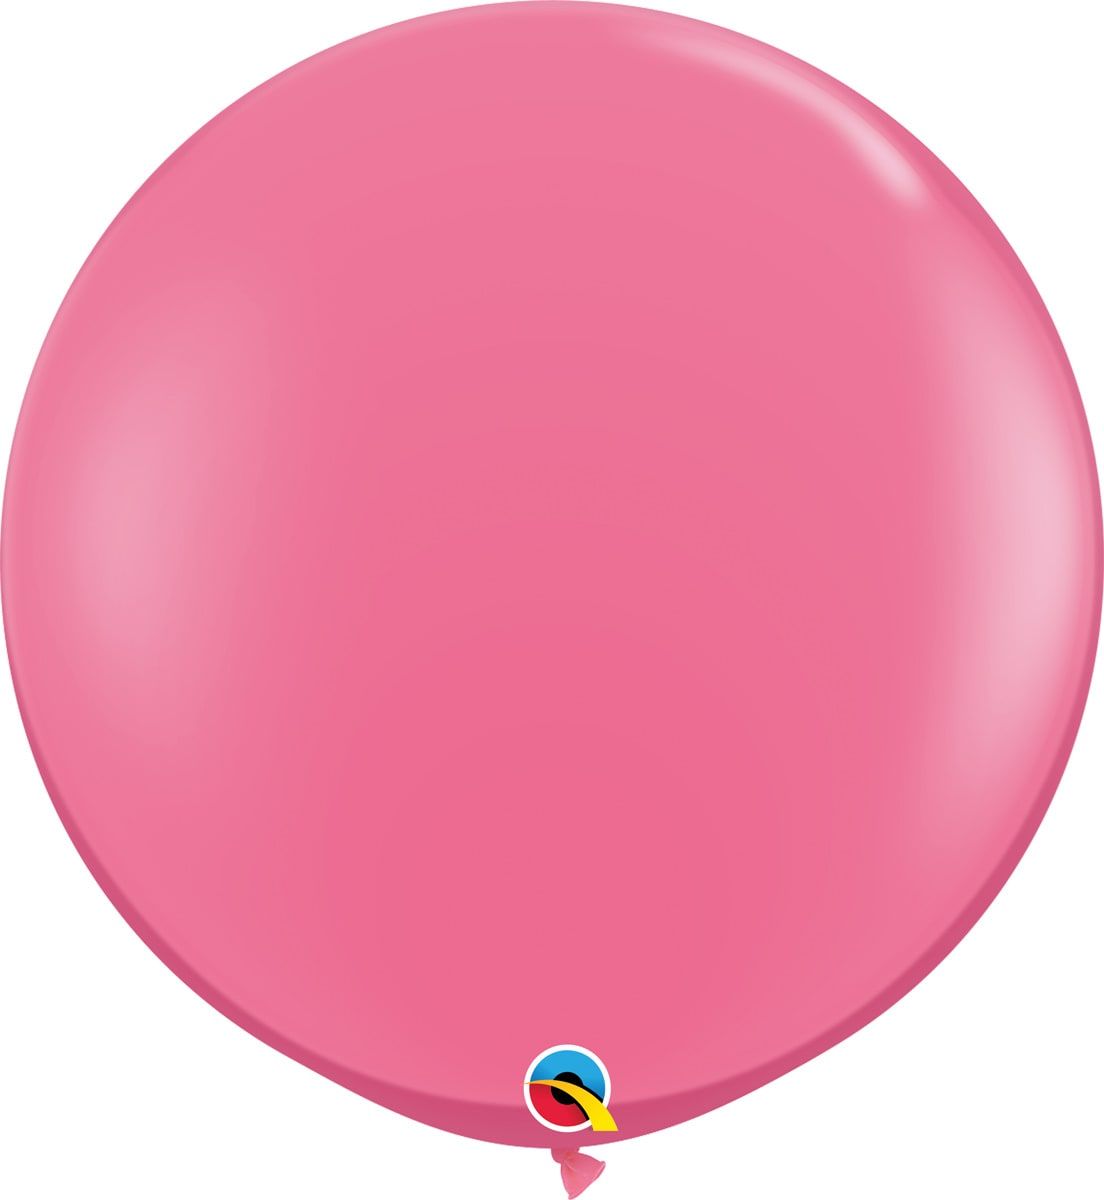 Fashion roze ballonnen 2 stuks 90cm